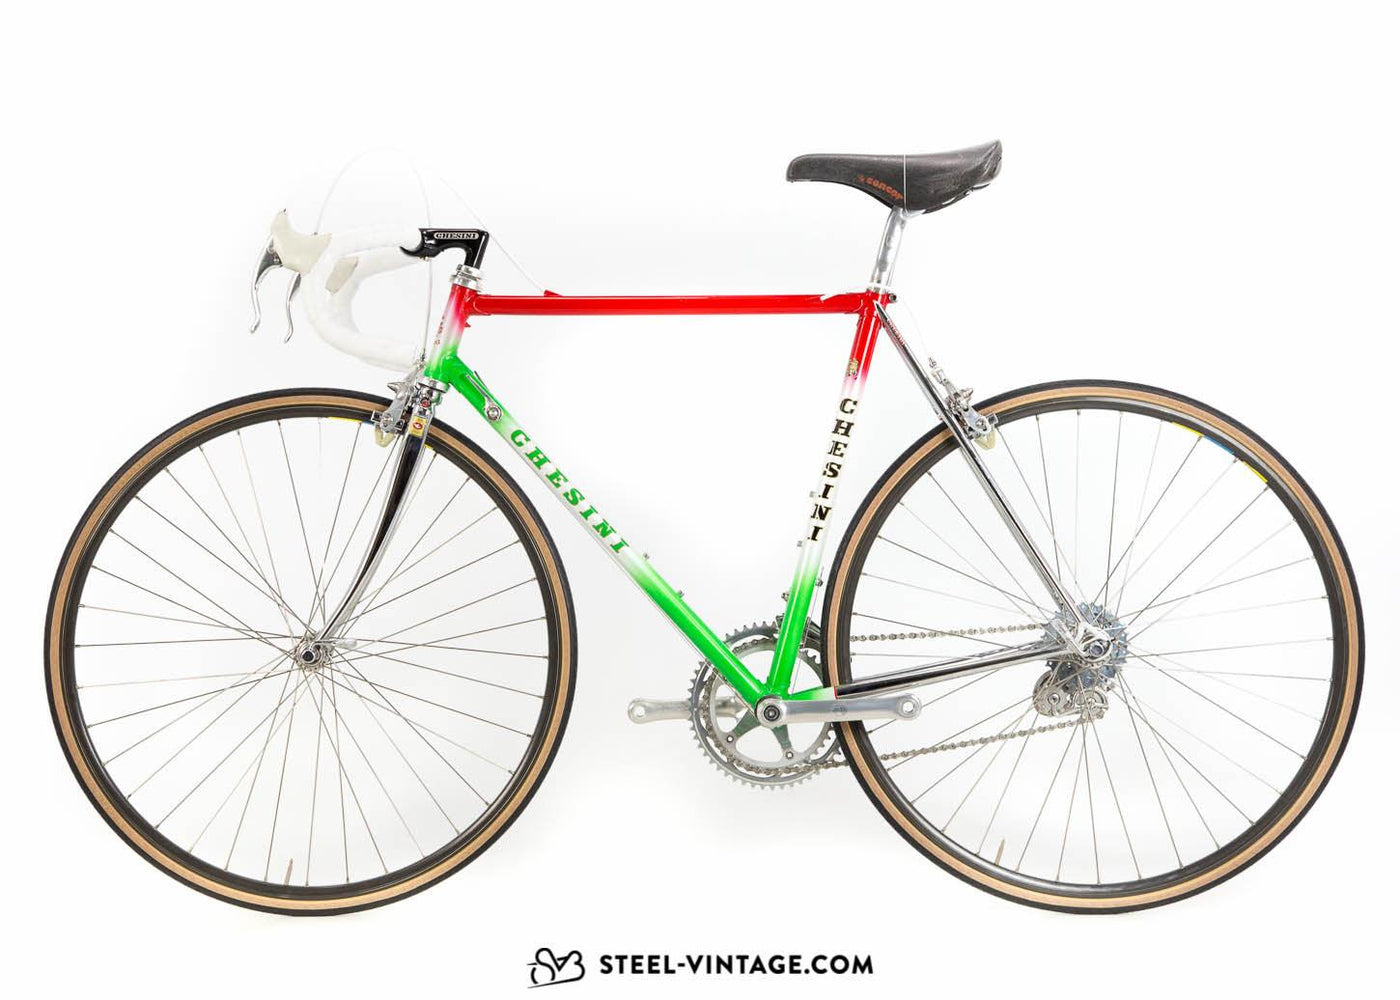 Chesini Arena Classic Road Bike 1987 - Steel Vintage Bikes